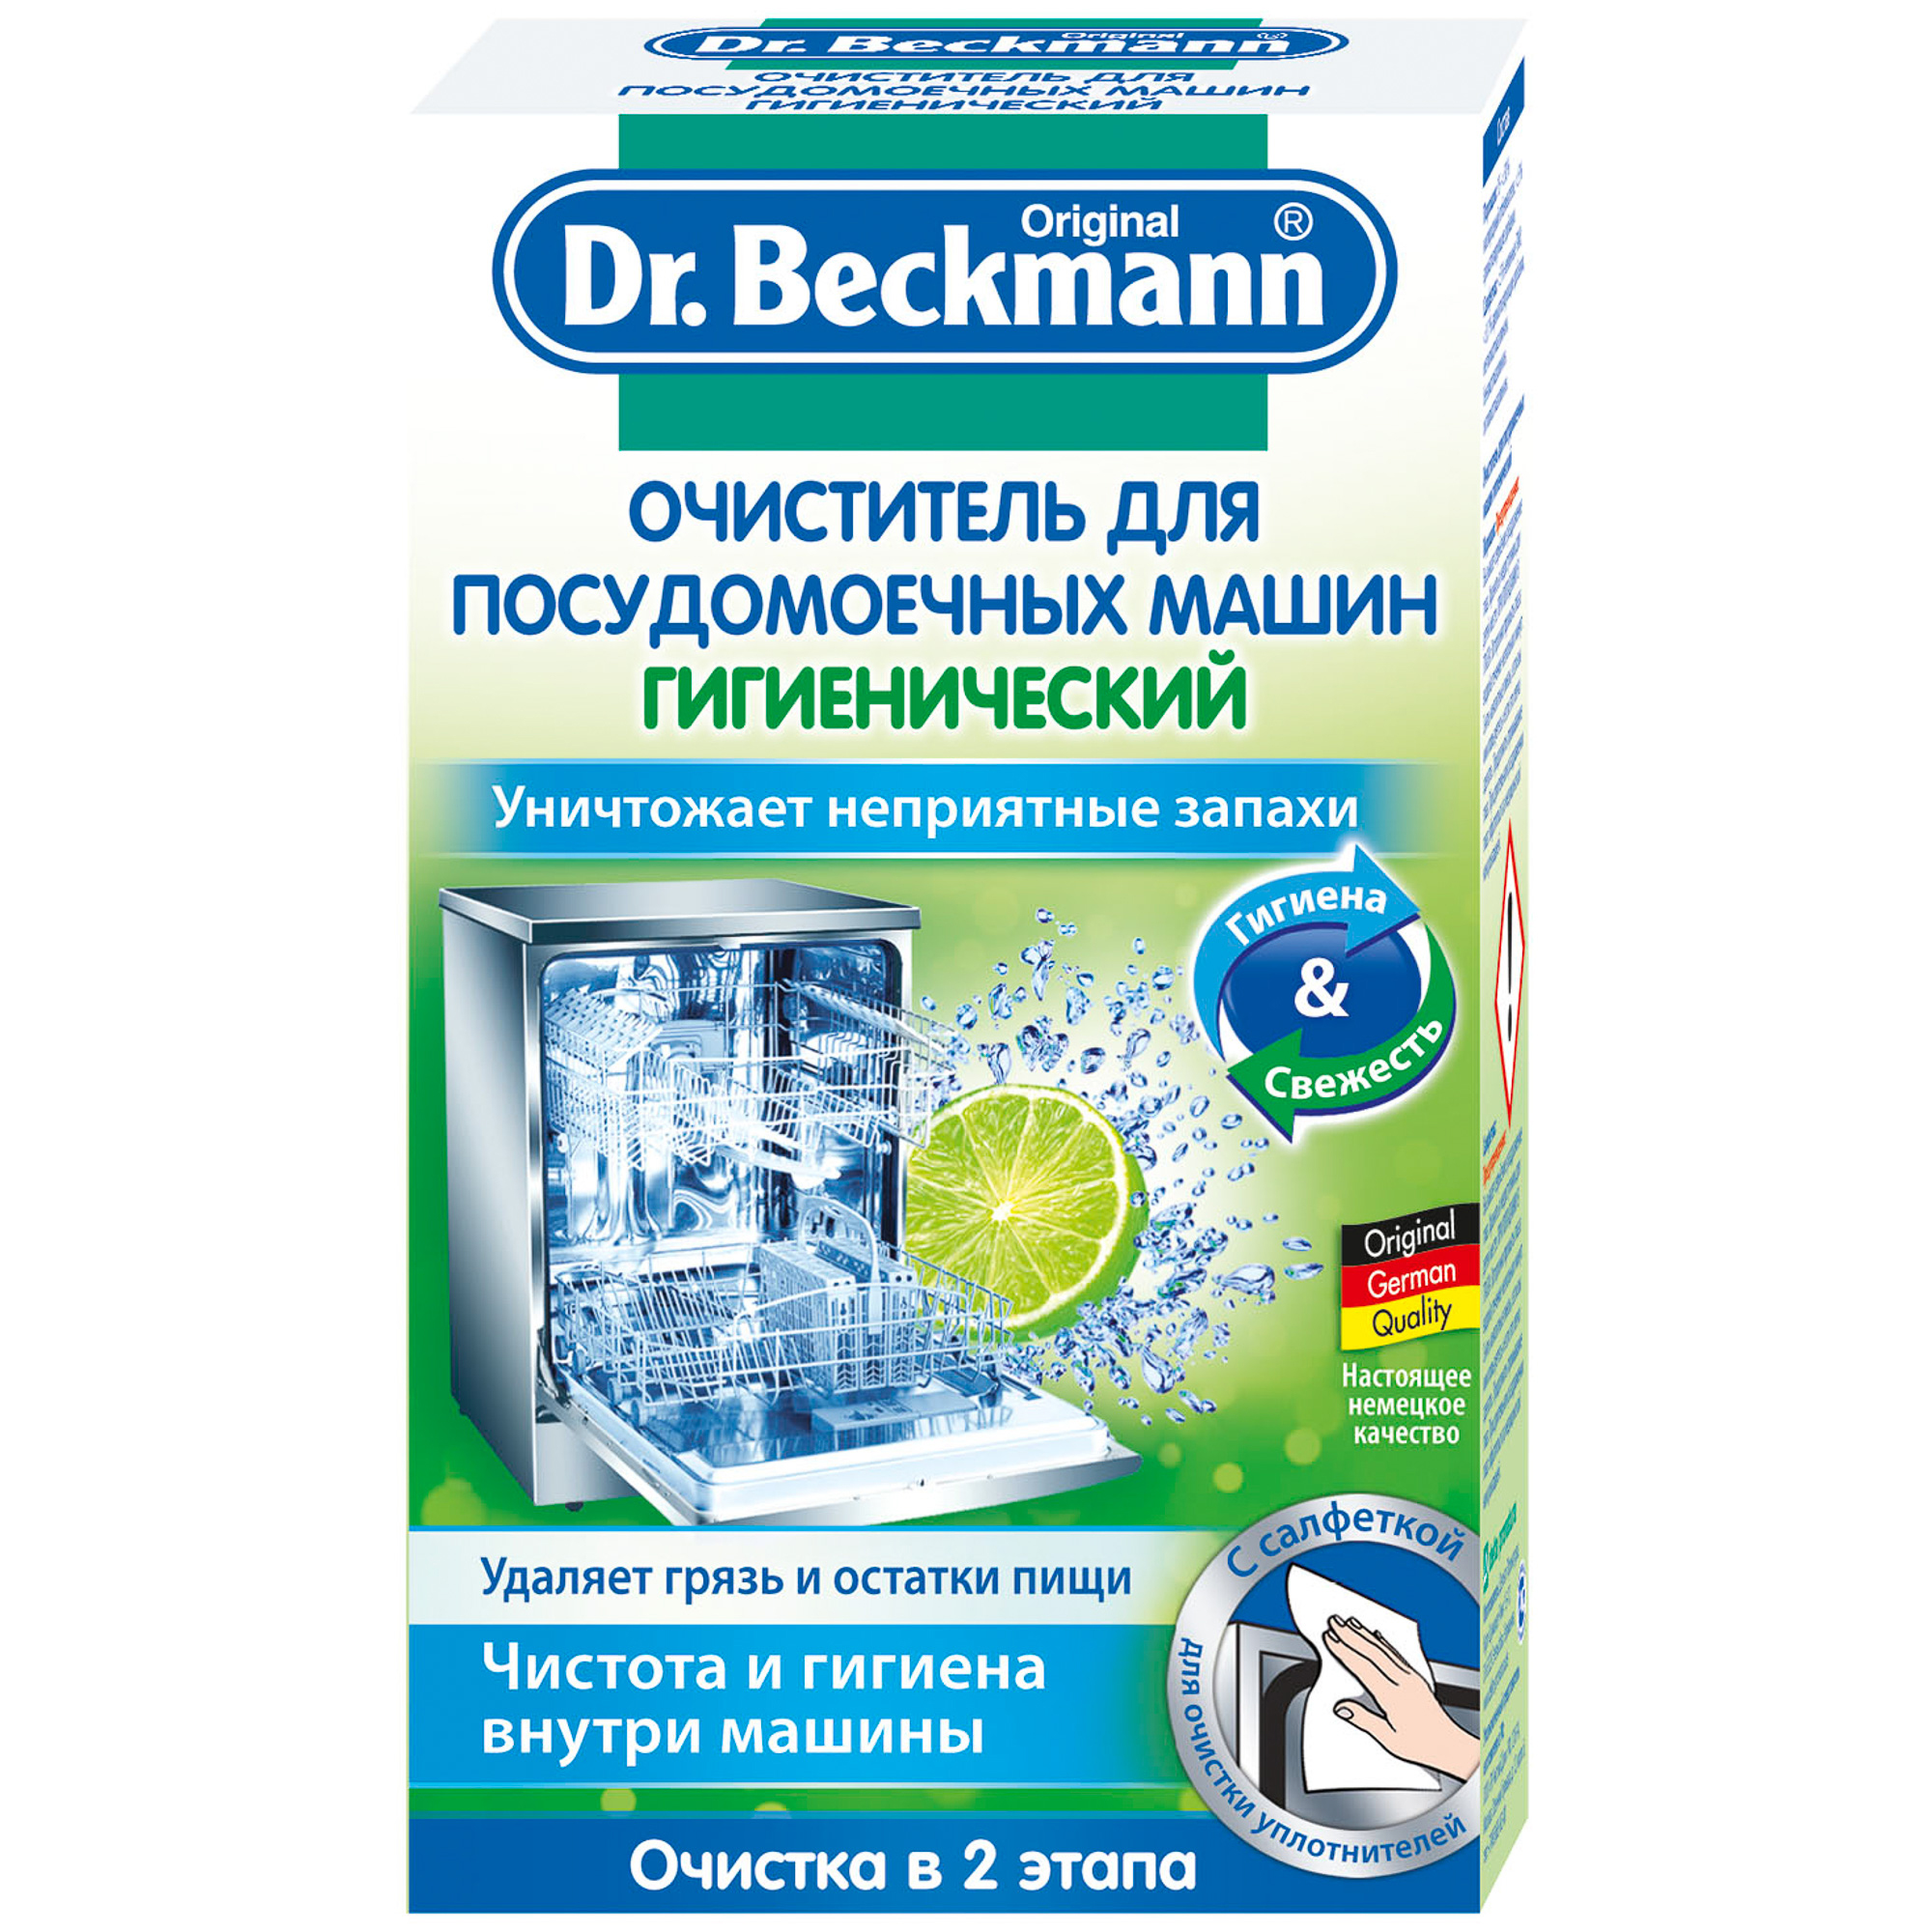 Очиститель для посудомоечных машин Dr.Beckmann гигиенический 75 г очиститель для посудомоечных машин dr beckmann гигиенический 75 г